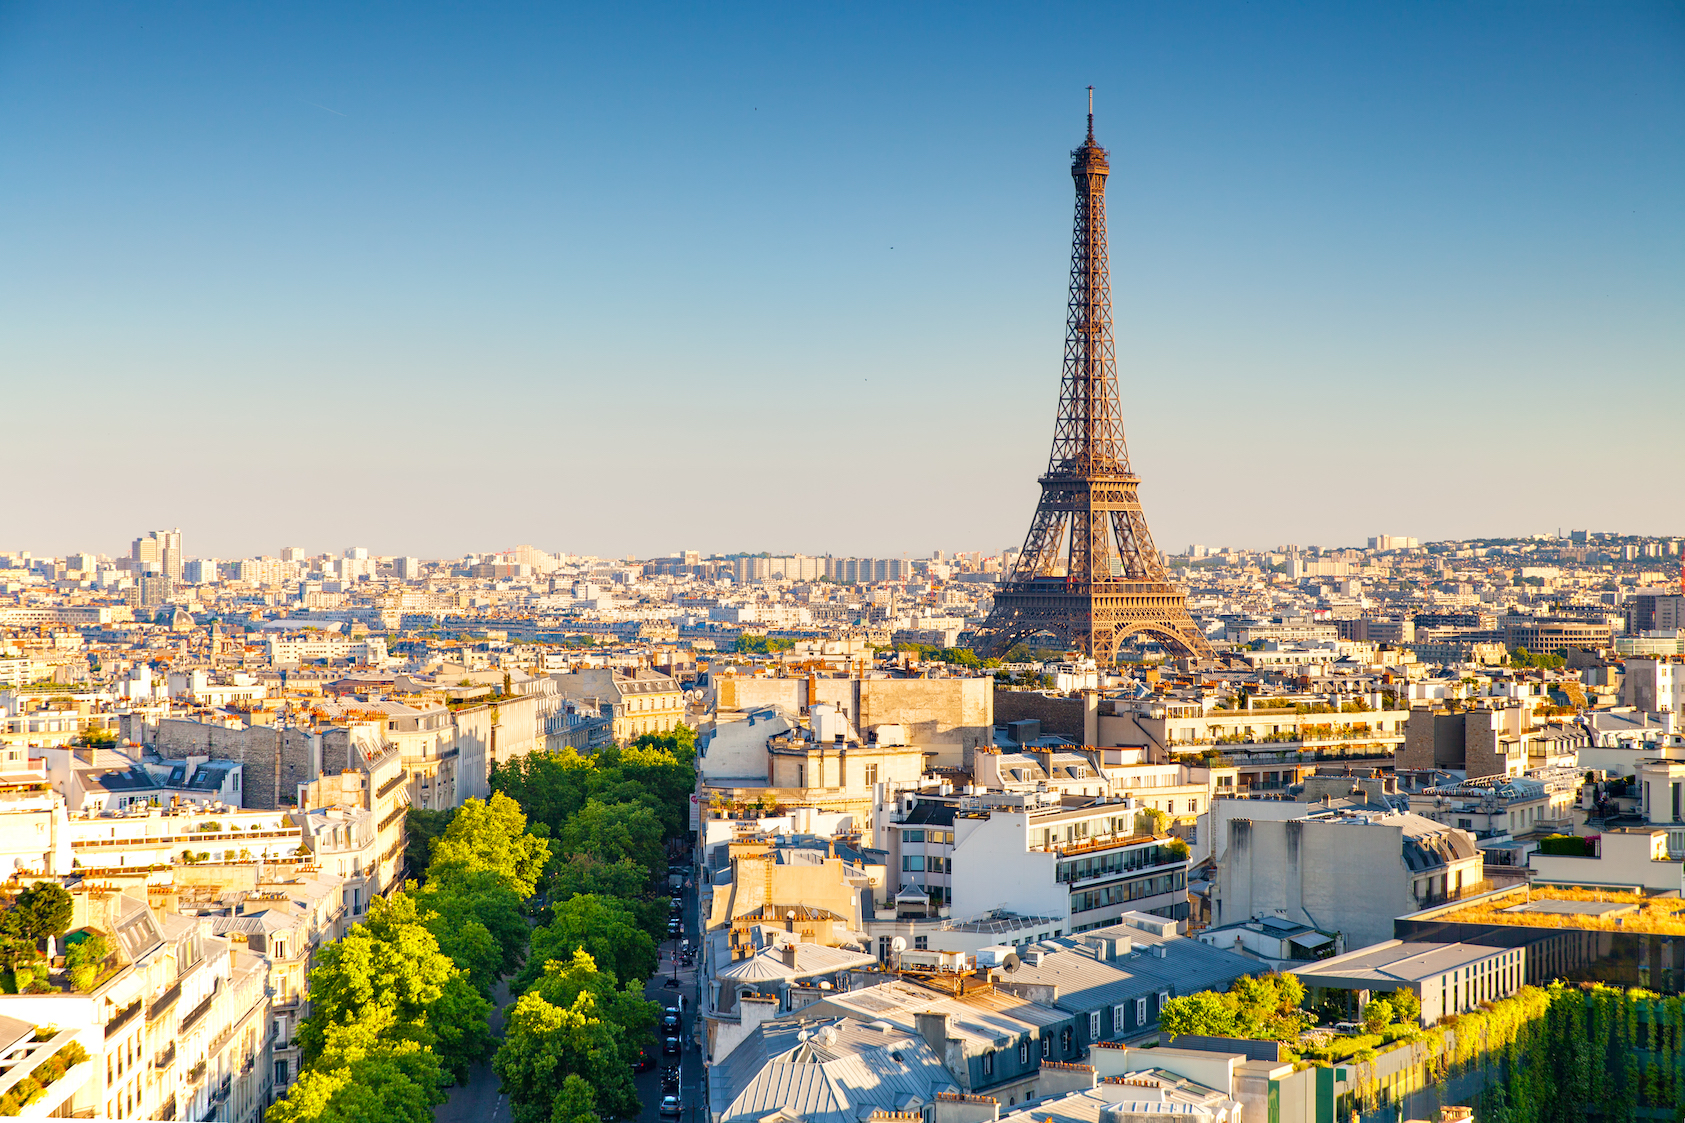 hình ảnh  cây Bầu trời Paris Tượng đài France Mùa xuân Mốc Tháp  Eiffel ngay Lê Ngọn lửa Tháp chuông sắc đẹp vẻ đẹp 2864x4224    1327562  hình ảnh đẹp  PxHere